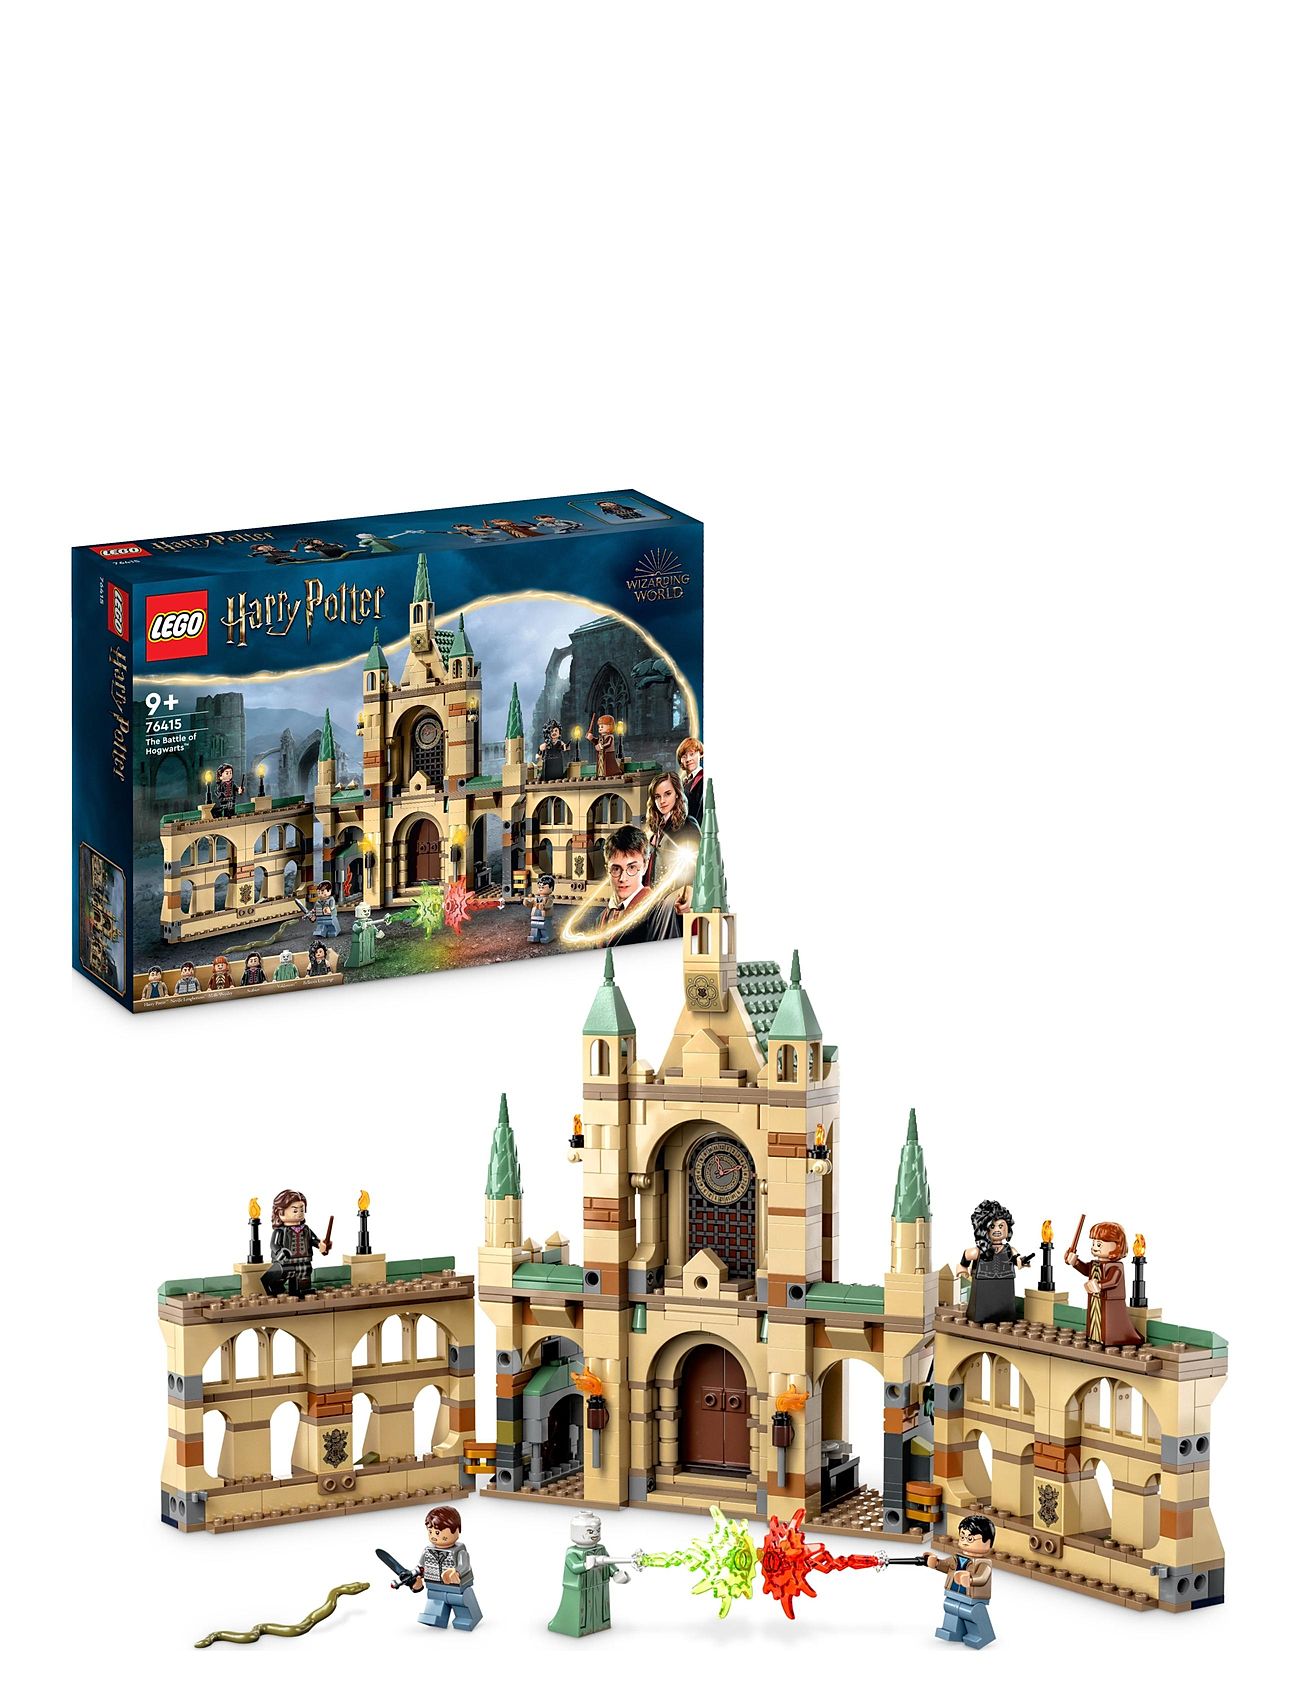 The Battle Of Hogwarts Castle Toy Toys Lego Toys Lego harry Potter Multi/patterned LEGO